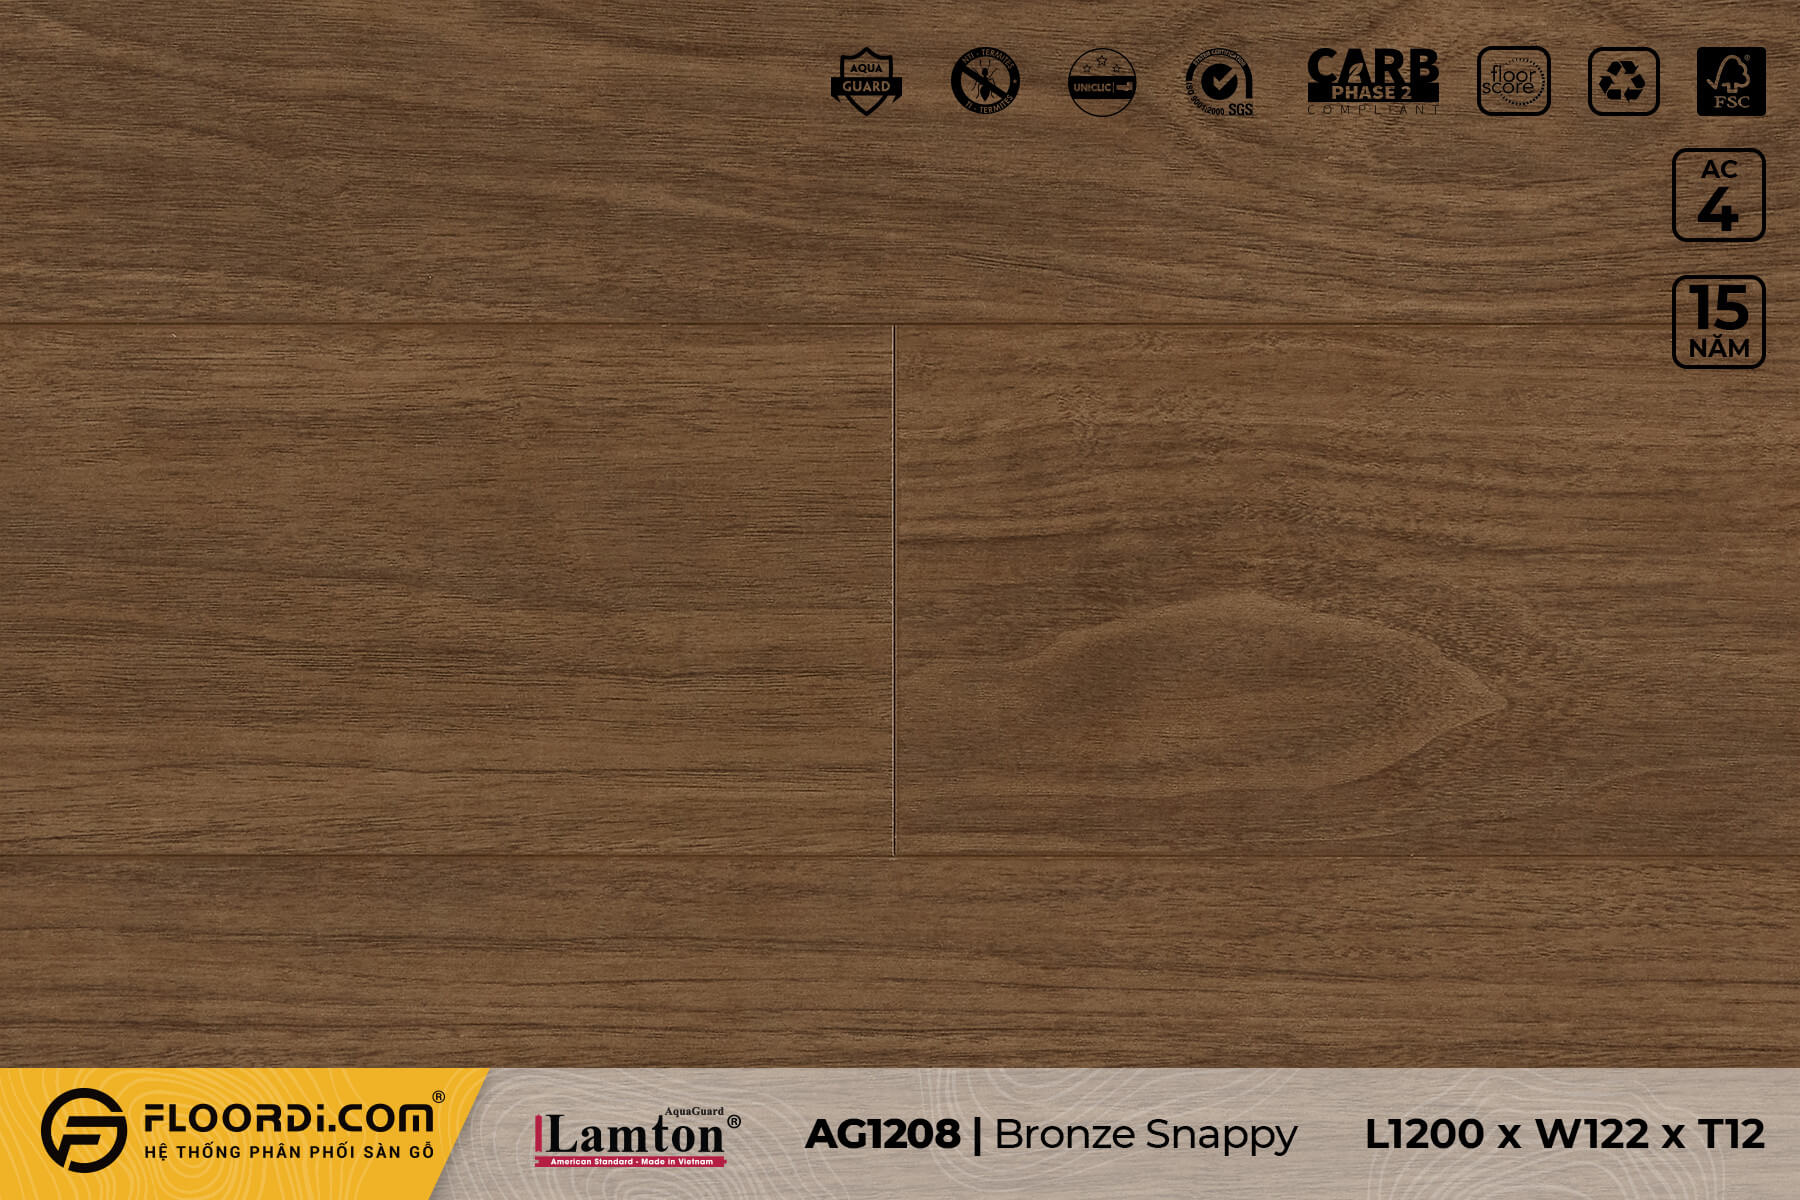 Sàn gỗ AG1208 được sử dụng trong công trình